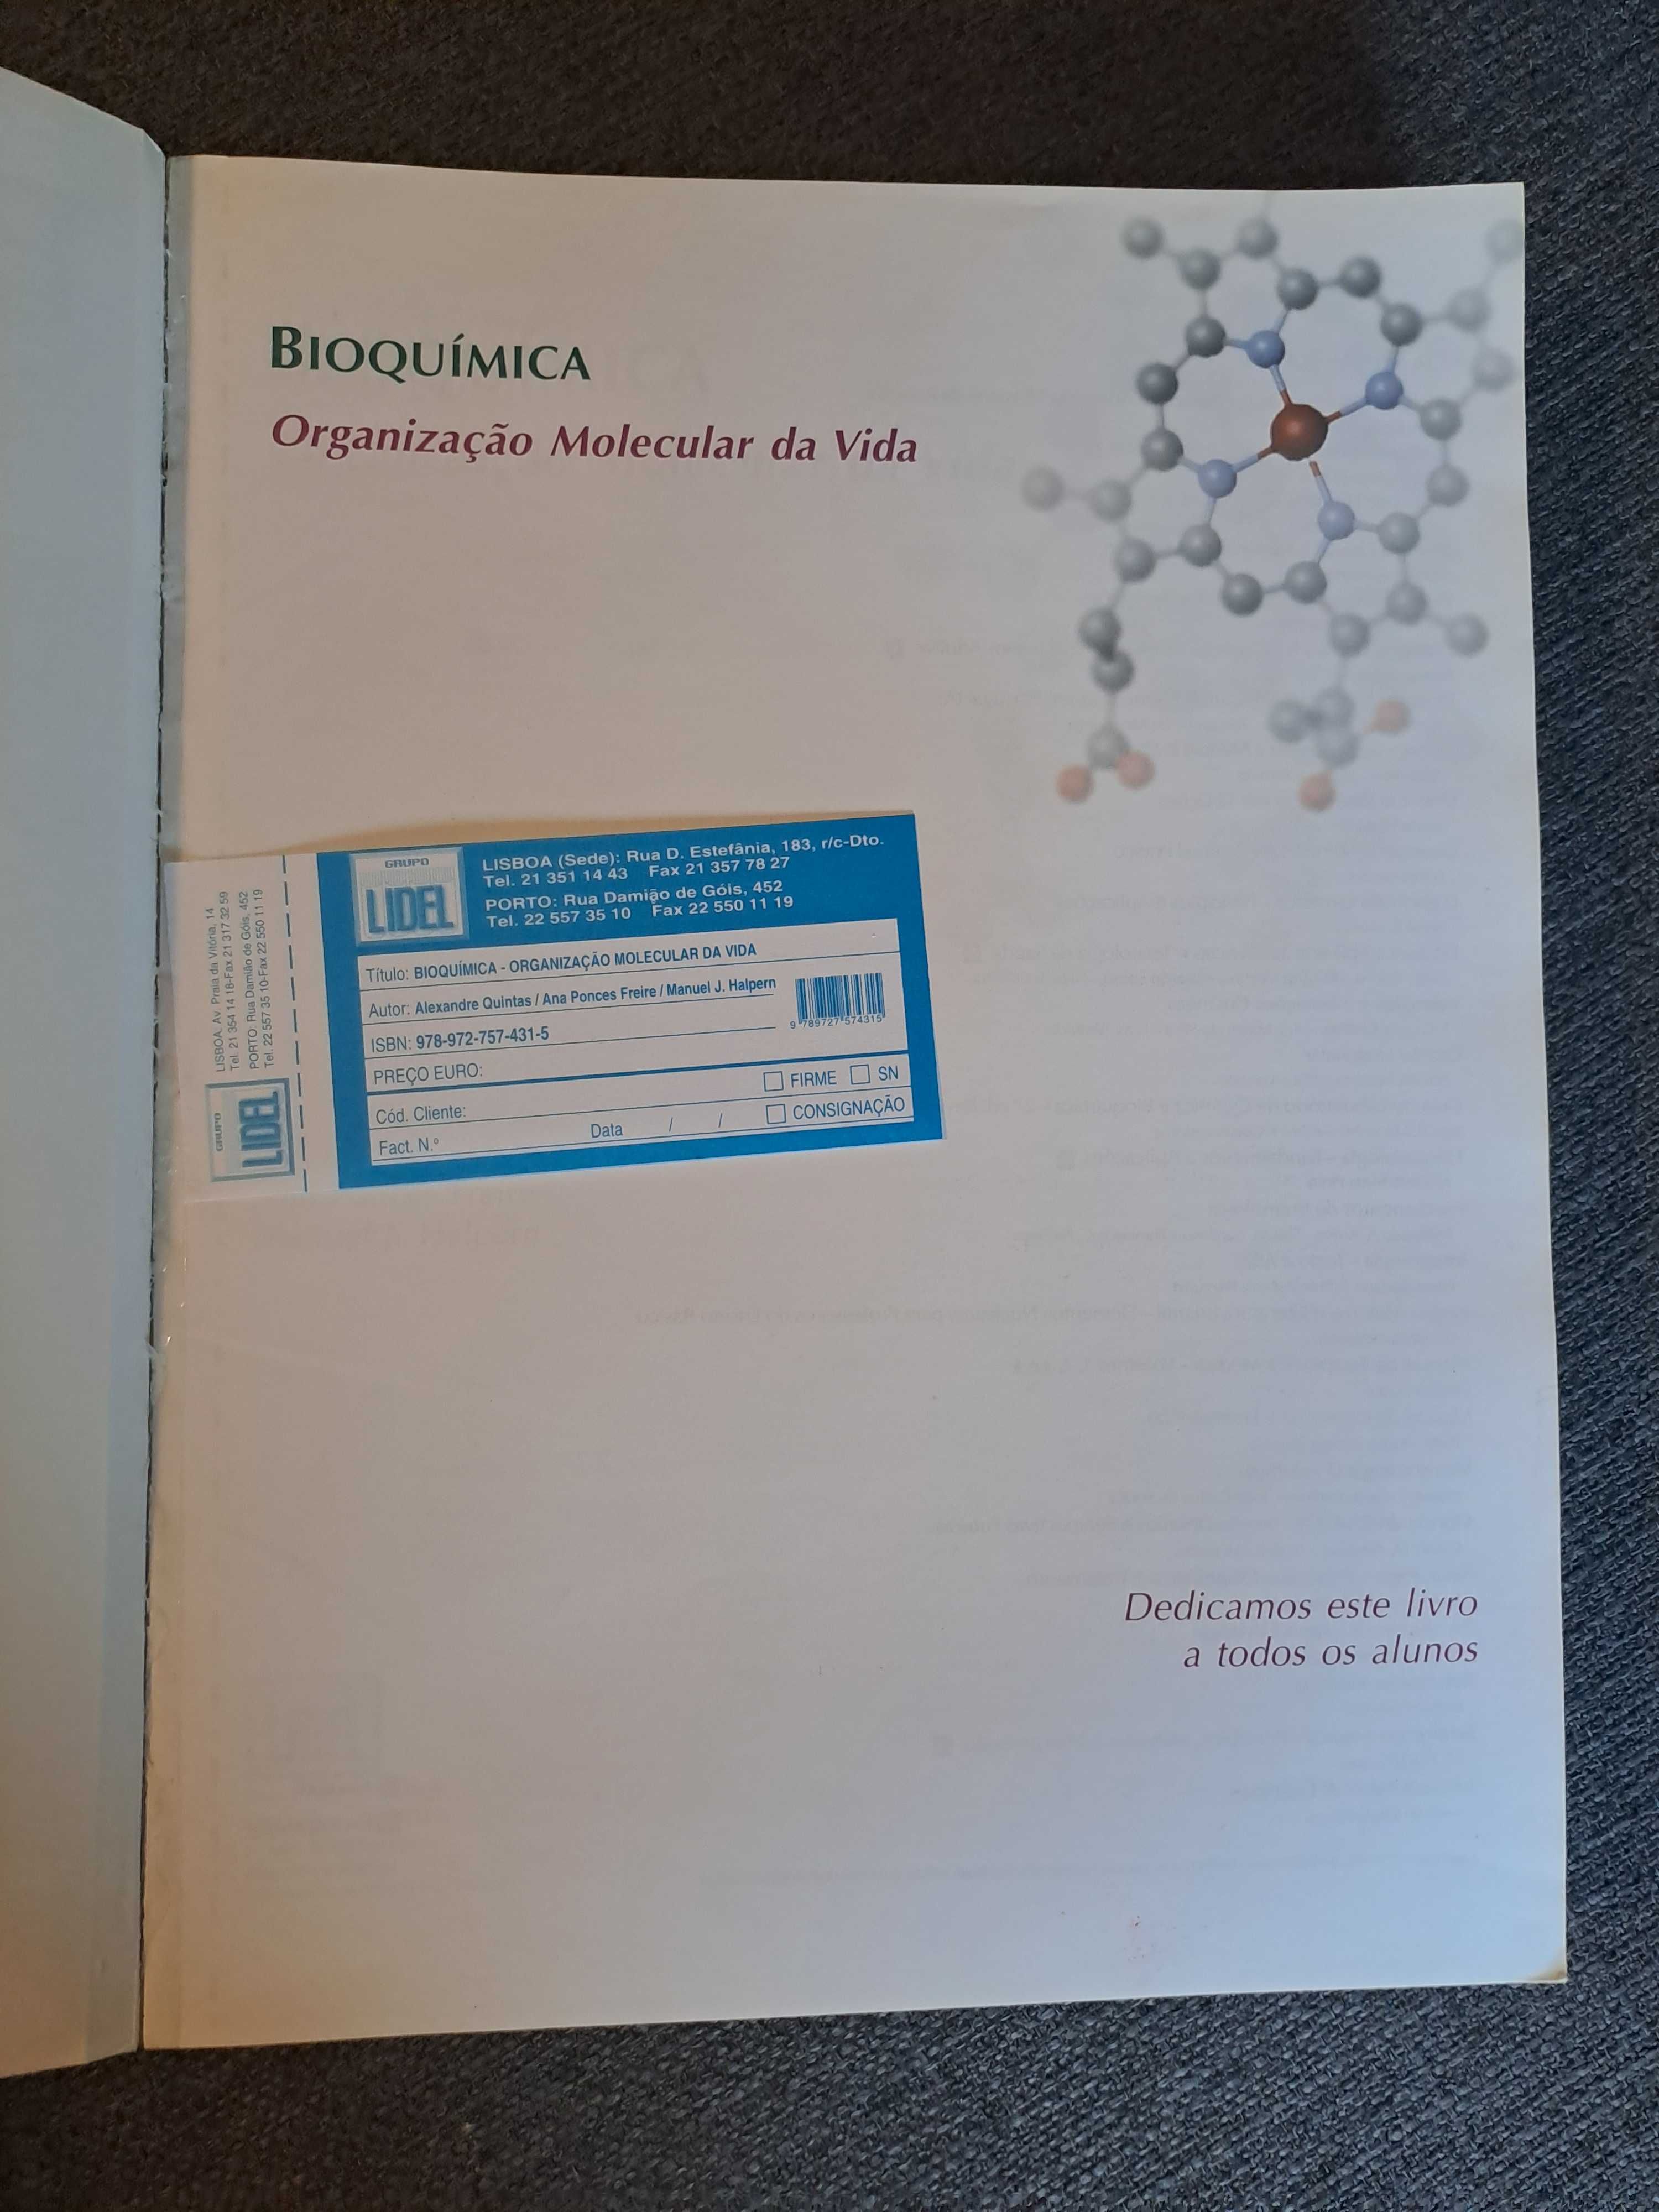 Livro "Bioquímica - Organização Molecular da Vida"